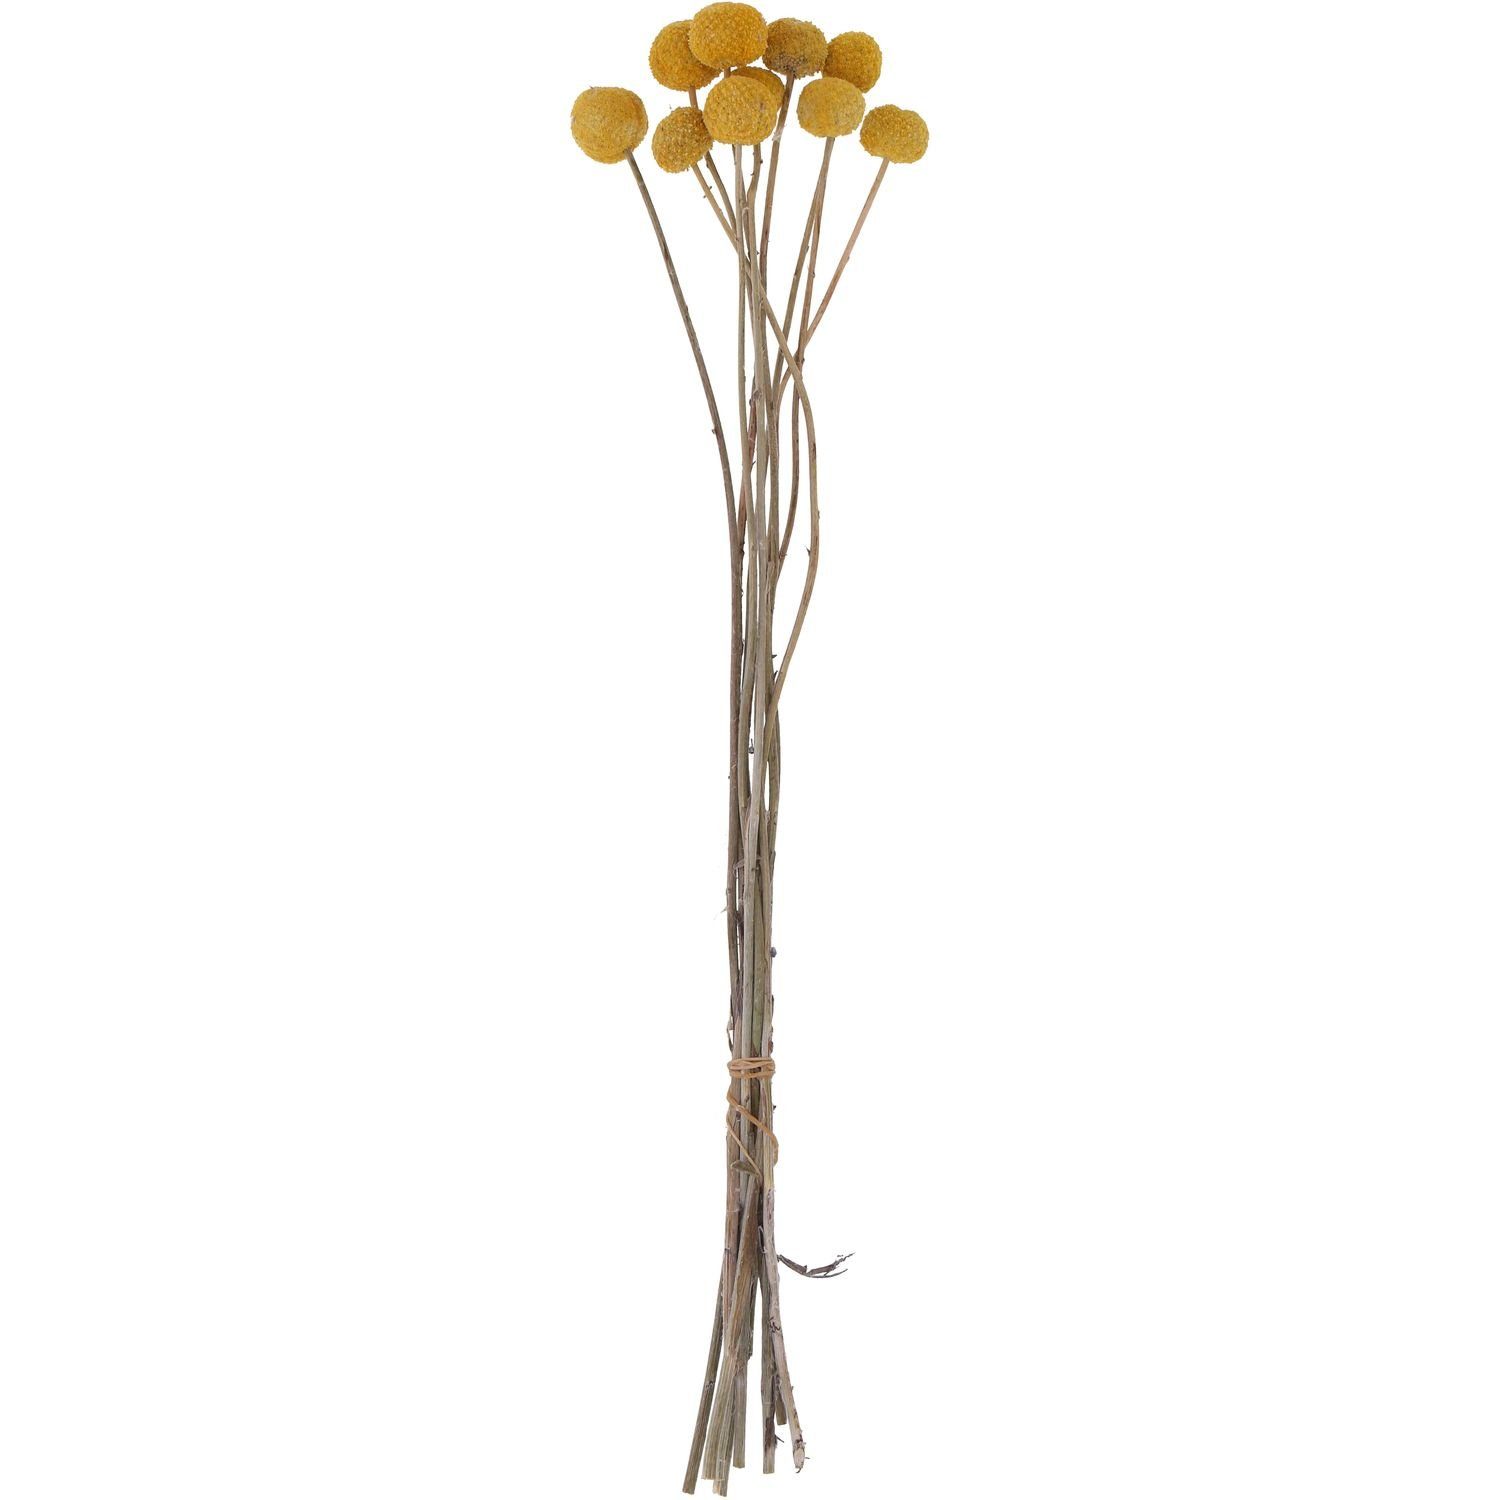 Trockenblume Craspedia natur - Bund/20 Stück - Länge ca. 50cm - natur-gelb, Vosteen